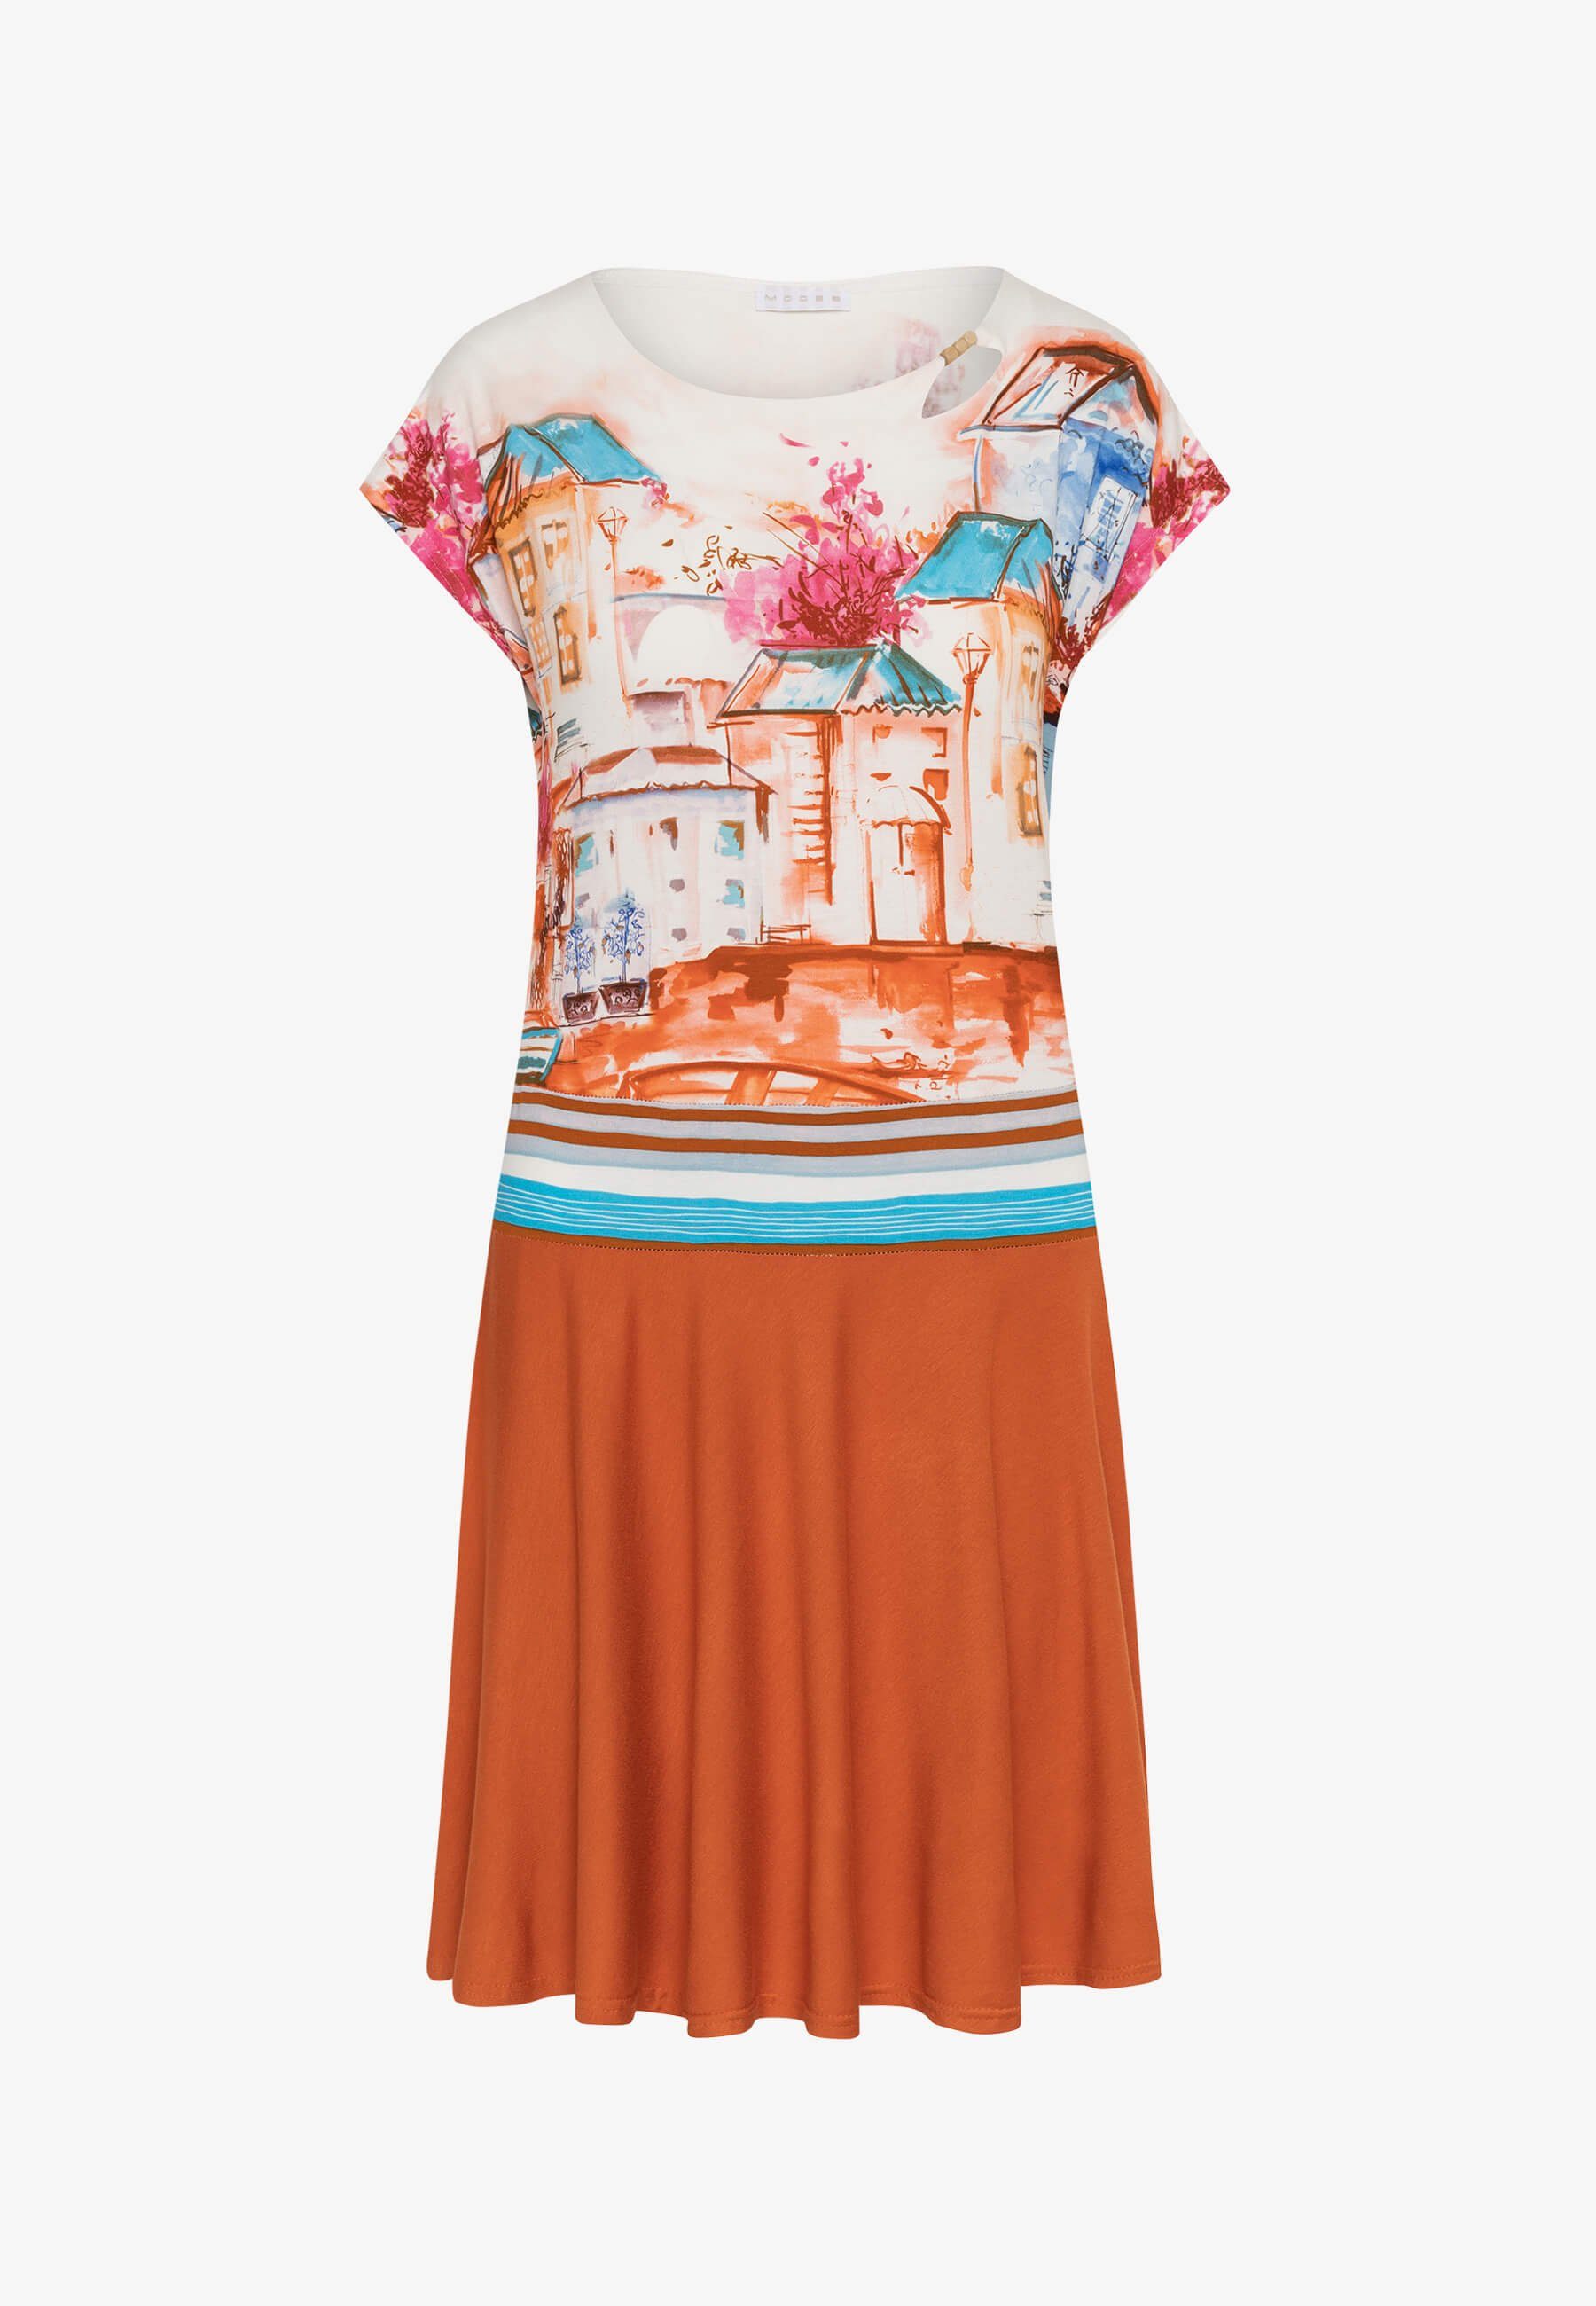 MODEE Sommerkleid mit farbenfrohen Häuserprint in femininer, leicht fallender Optik italienischer Haus/Boote-Print Mango Druck